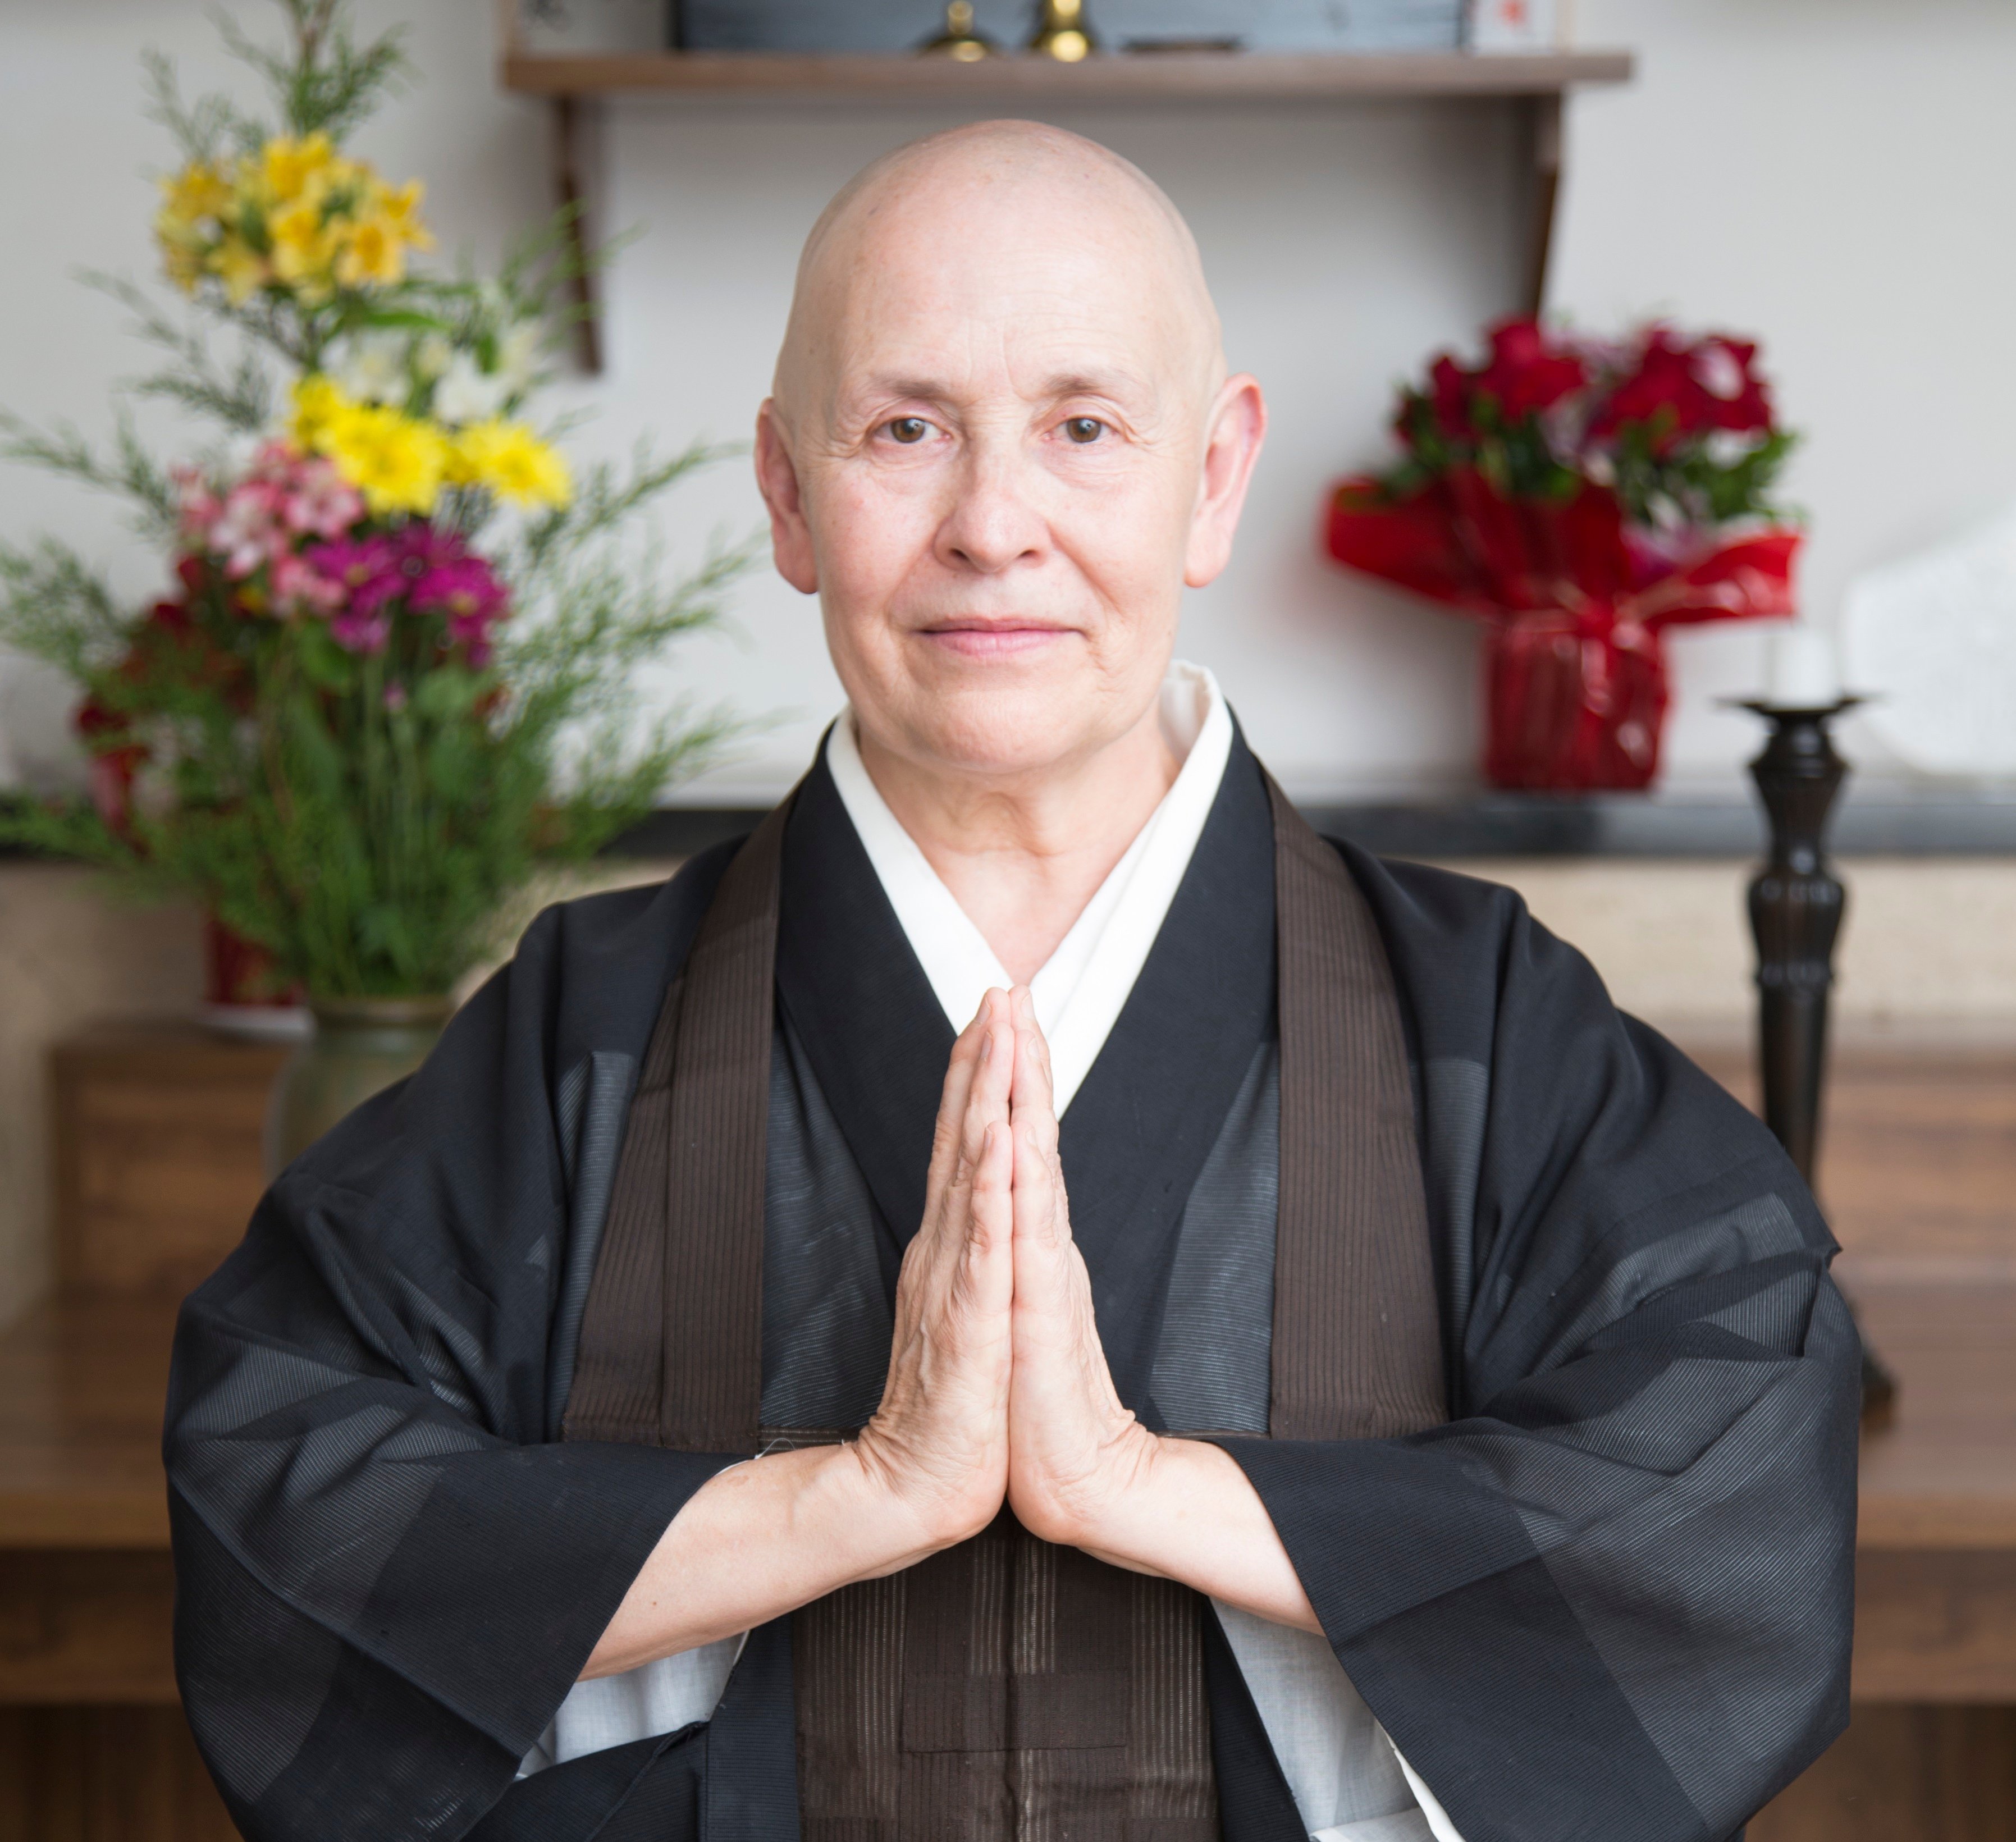 Ela foi roqueira, usou drogas e encontrou no zen budismo o estado de tranquilidade. Agora, a monja mais famosa do Brasil lança livro para uma vida plena